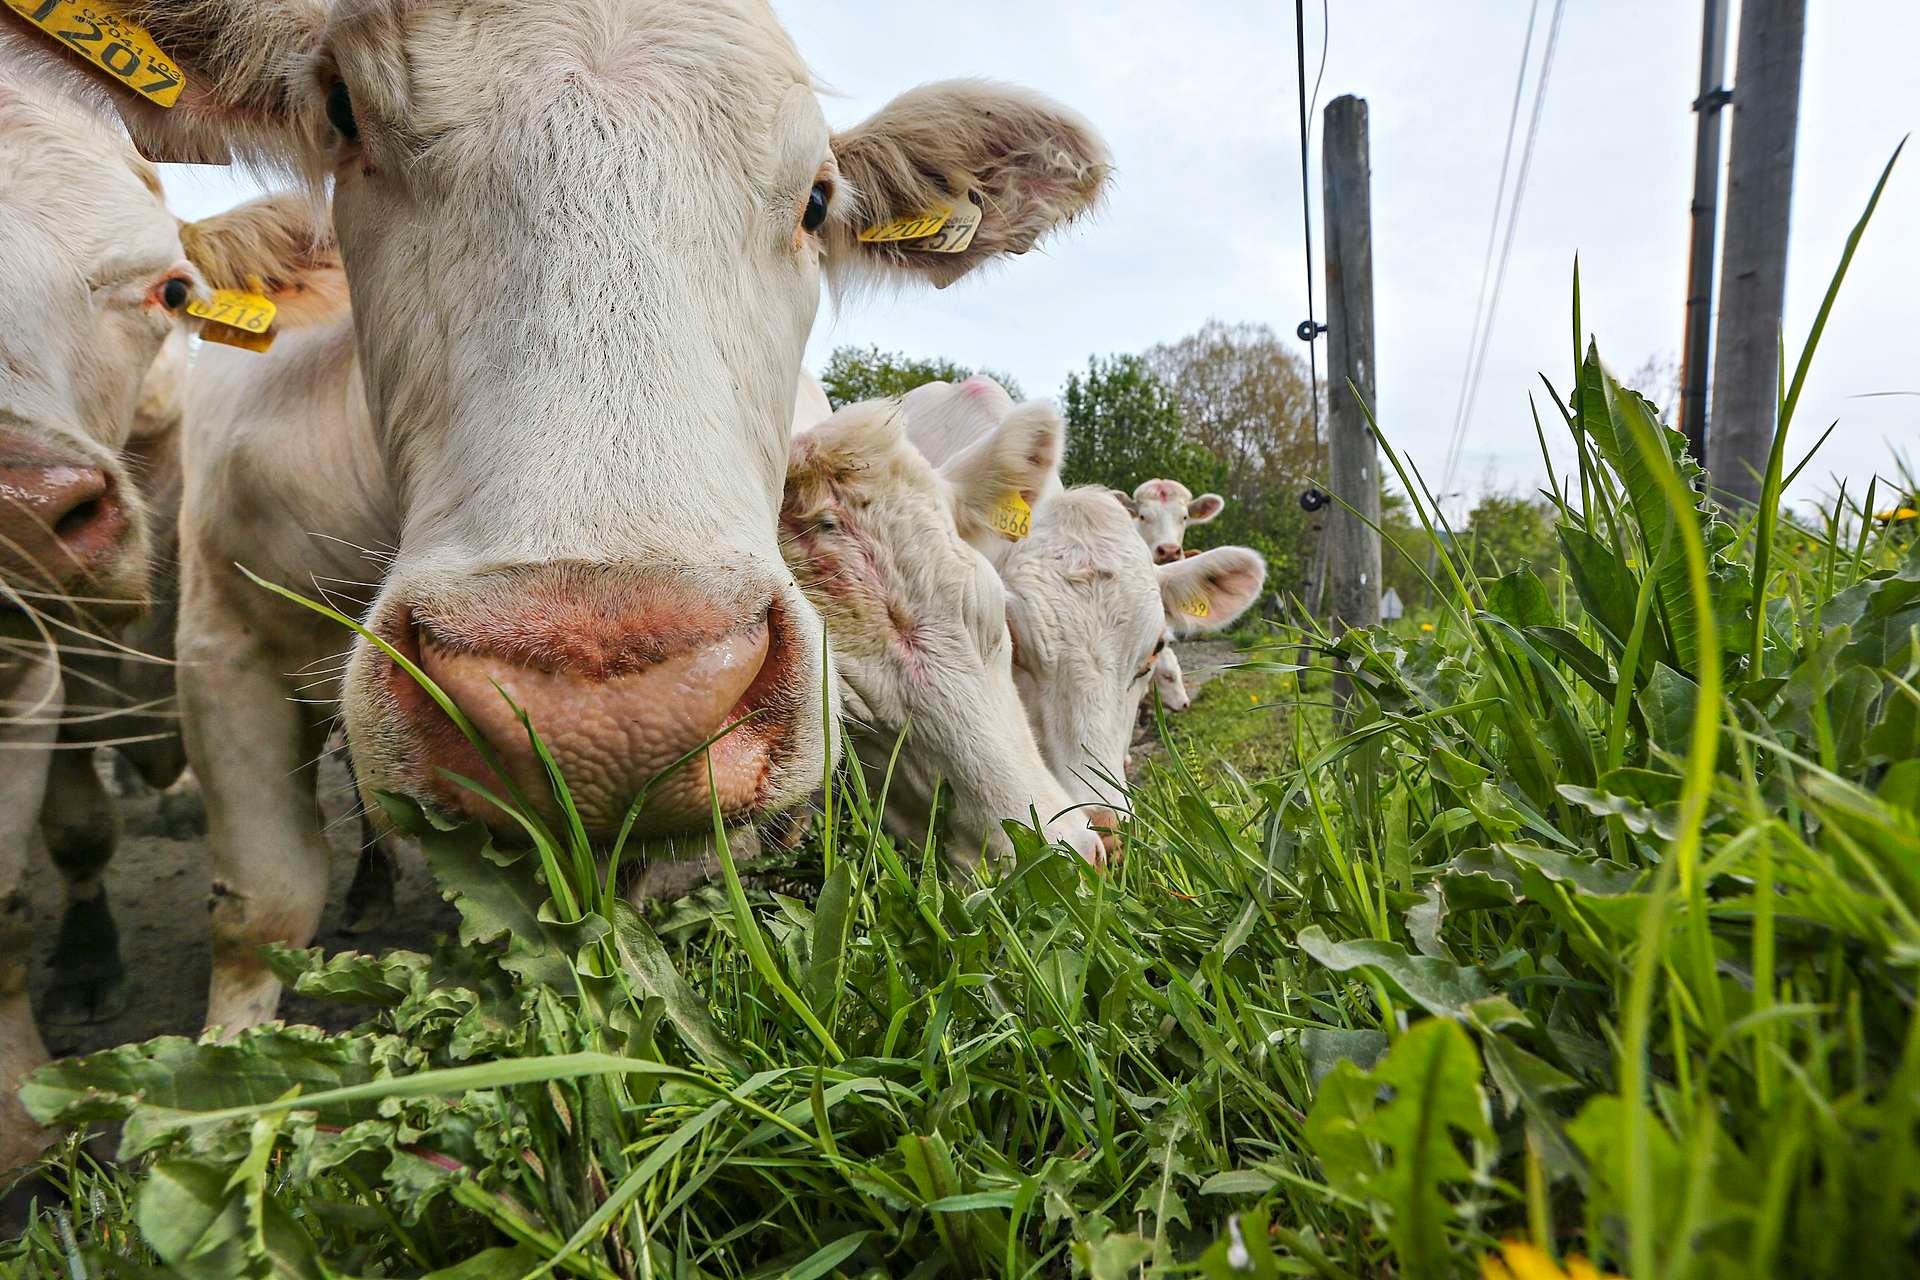 Det er ikke gress, alt kua spiser. Men nå kommer kjøttprodukter hvor det nesten er bare gress i dietten.